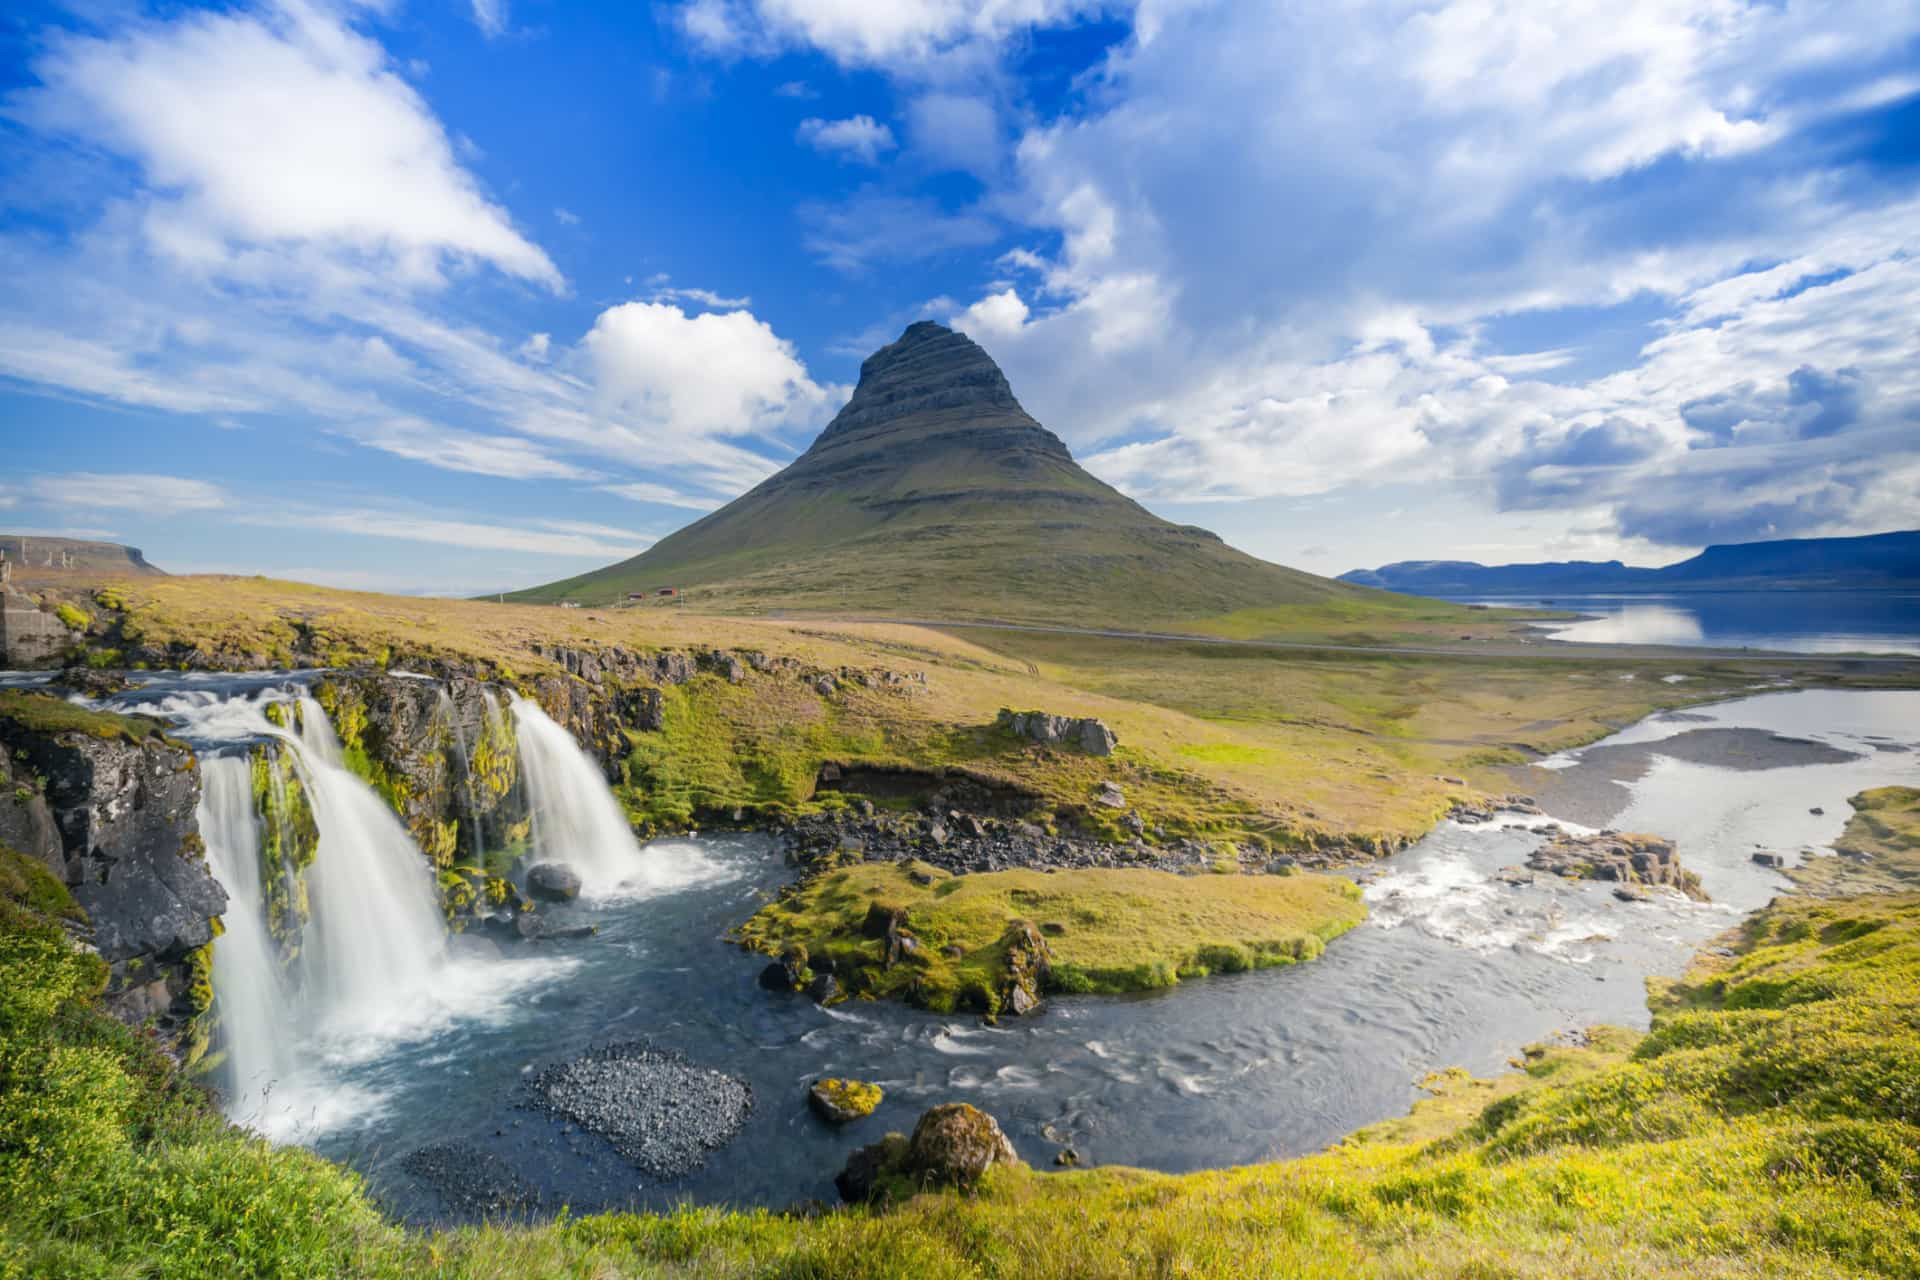 <p>L'Islande est <a href="https://fr.starsinsider.com/travel/224046/les-plus-belles-contrees-sauvages-du-monde" rel="noopener">une terre sauvage</a> géothermique composée de glaciers, de volcans et de cascades. De plus en plus de touristes affluent vers cette petite île rocheuse au milieu de l'Océan atlantique. </p> <p>Découvrez nos conseils de locaux qui vous assureront une expérience inoubliable et vous permettront d'éviter les pièges à touristes dans lesquels les nouveaux visiteurs peuvent facilement tomber sur cette île de feu et de glace. </p><p>Tu pourrais aussi aimer:<a href="https://www.starsinsider.com/n/134495?utm_source=msn.com&utm_medium=display&utm_campaign=referral_description&utm_content=294605v2"> Les meilleurs plantes et légumes à faire pousser chez soi </a></p>